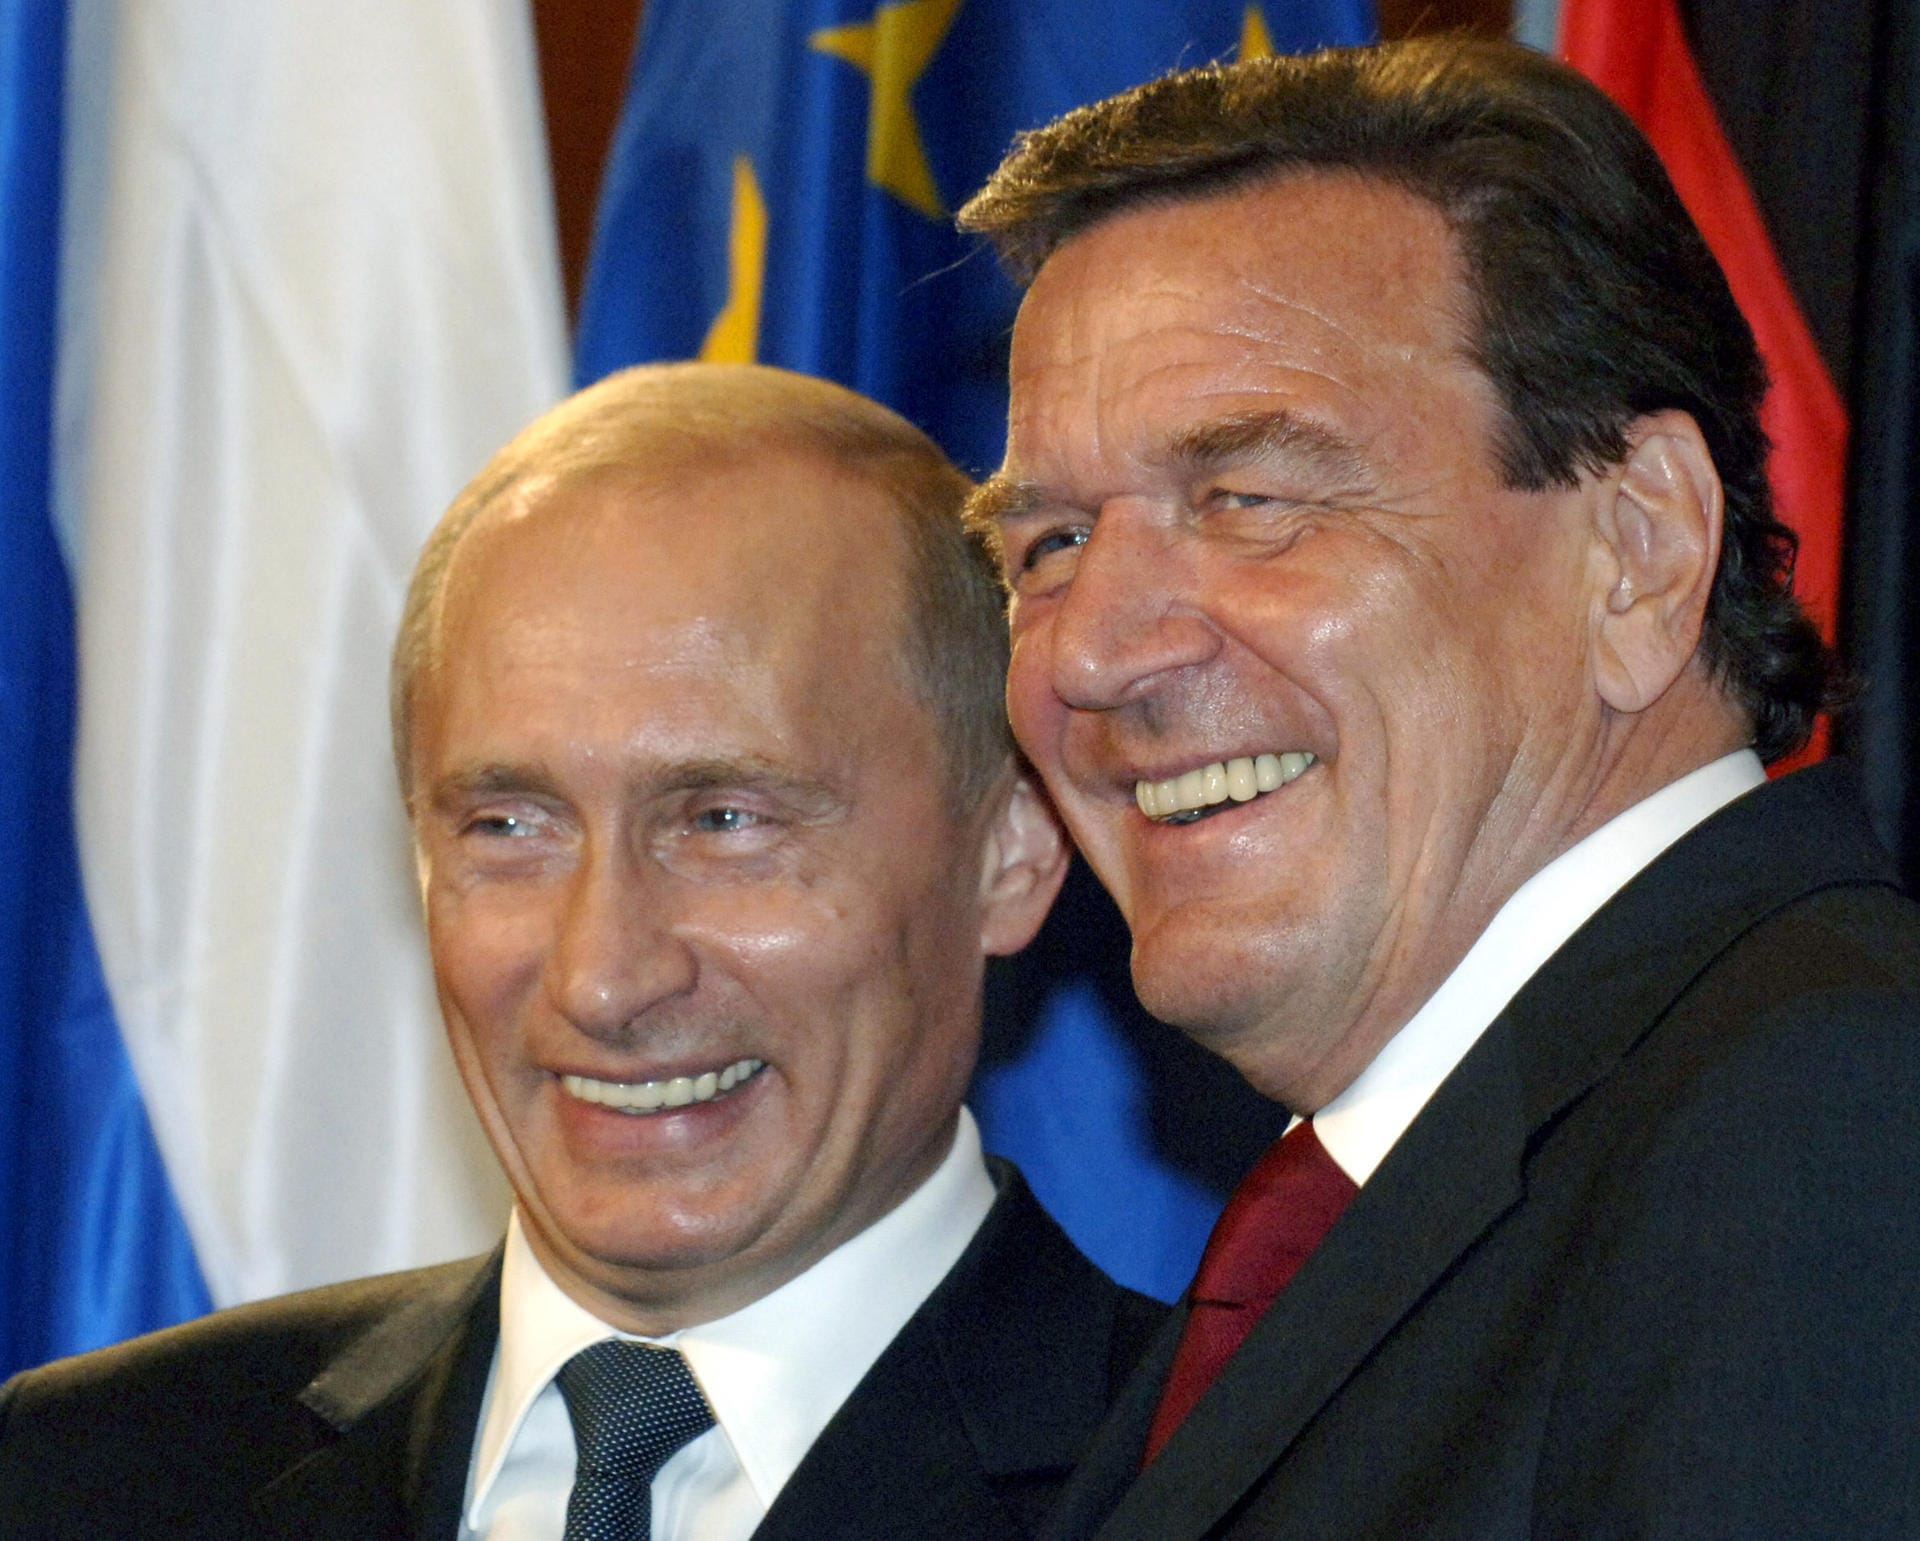 September 2005: Lachend steht Schröder während der Vertragsunterzeichnung über den Bau einer Erdgasleitung durch die Ostsee neben Russlands Präsident Wladimir Putin. Seit Jahrzehnten sind die beiden befreundet – trotz aller Kritik aus der Opposition.